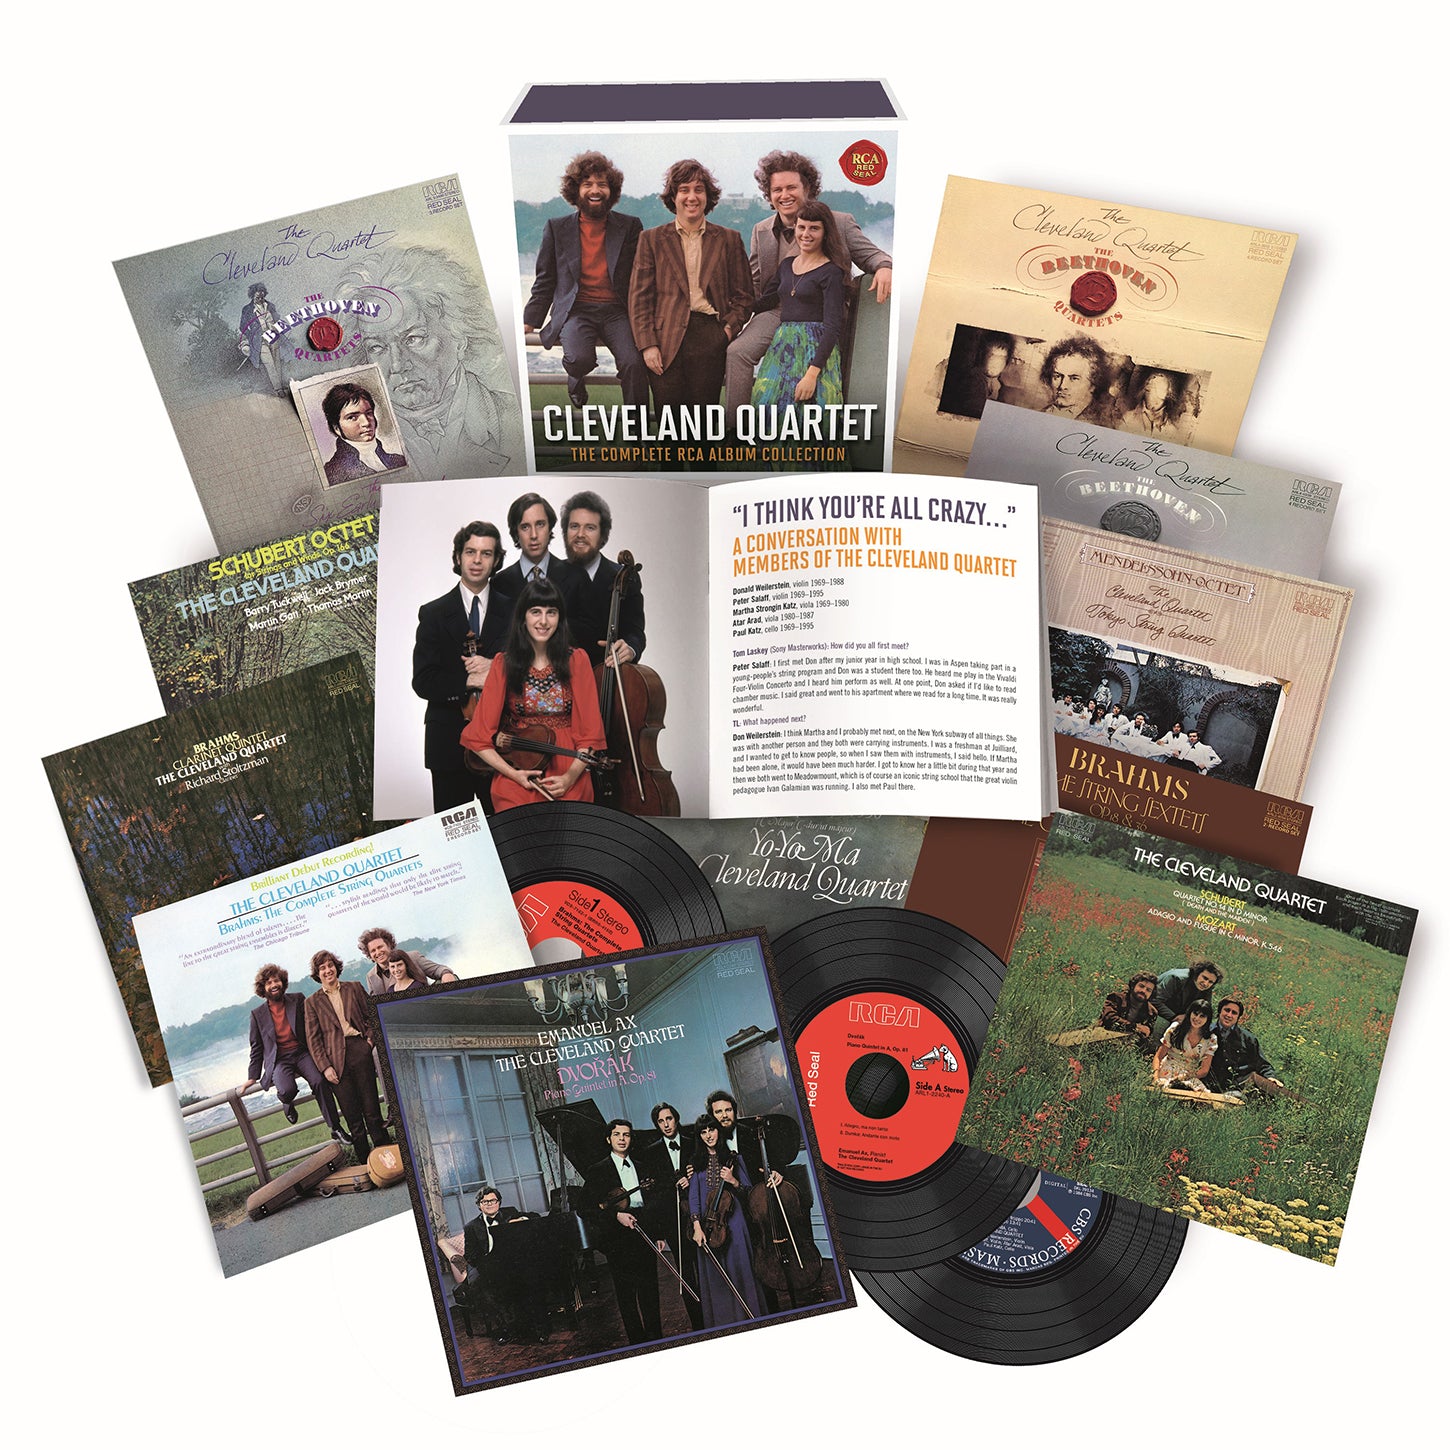 Cleveland Quartet – The Complete RCA Album Collection